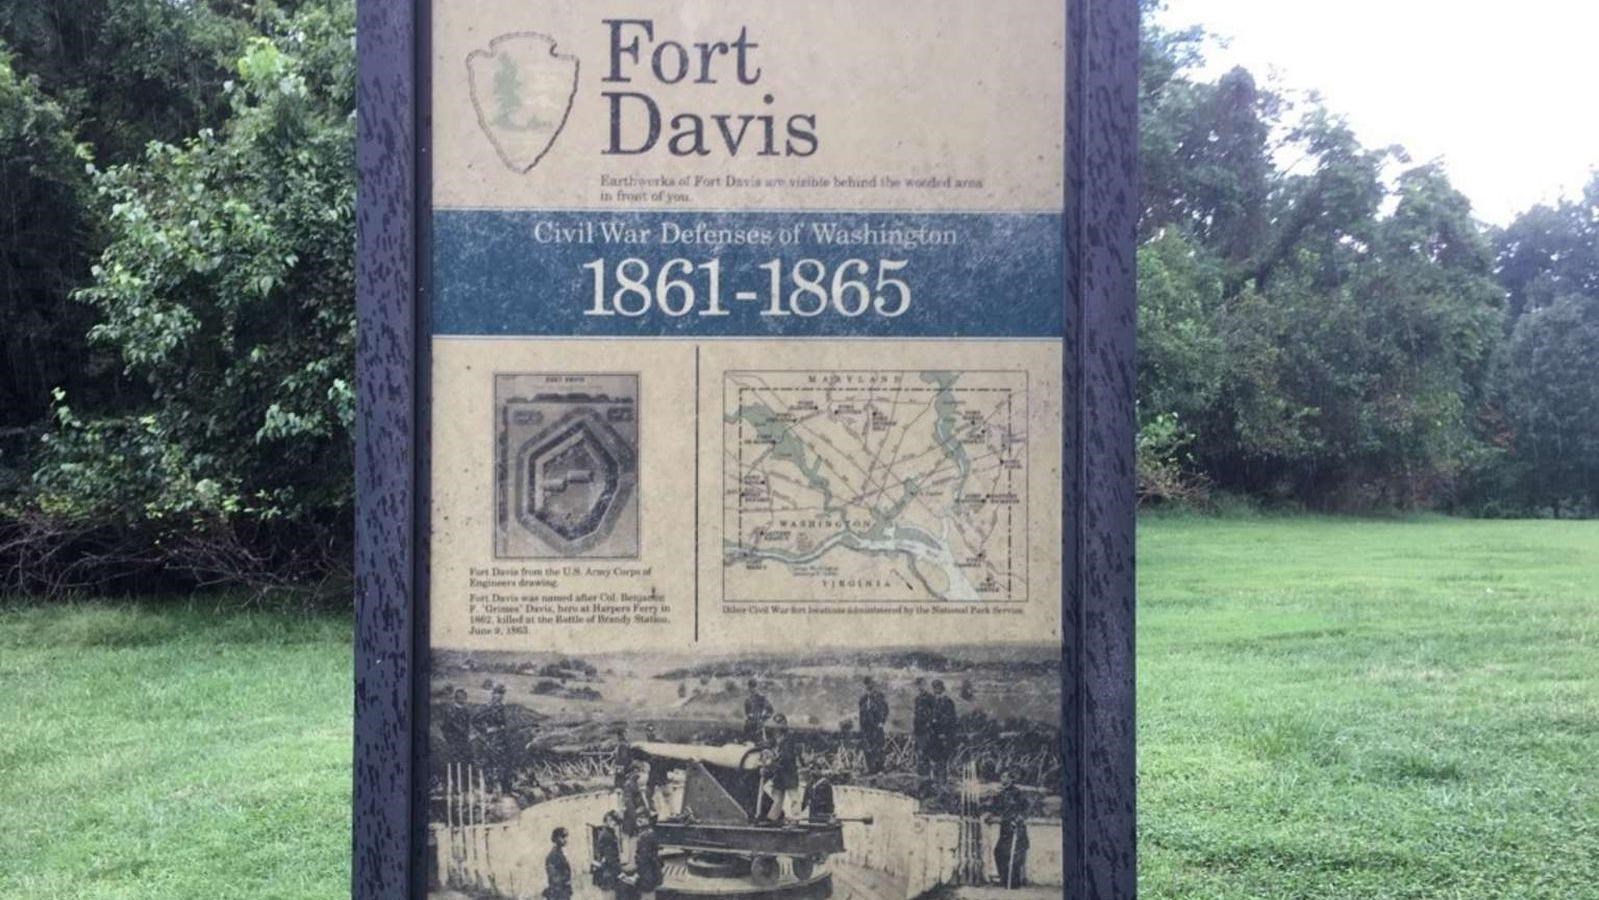 An interpretive panel describes Fort Davis